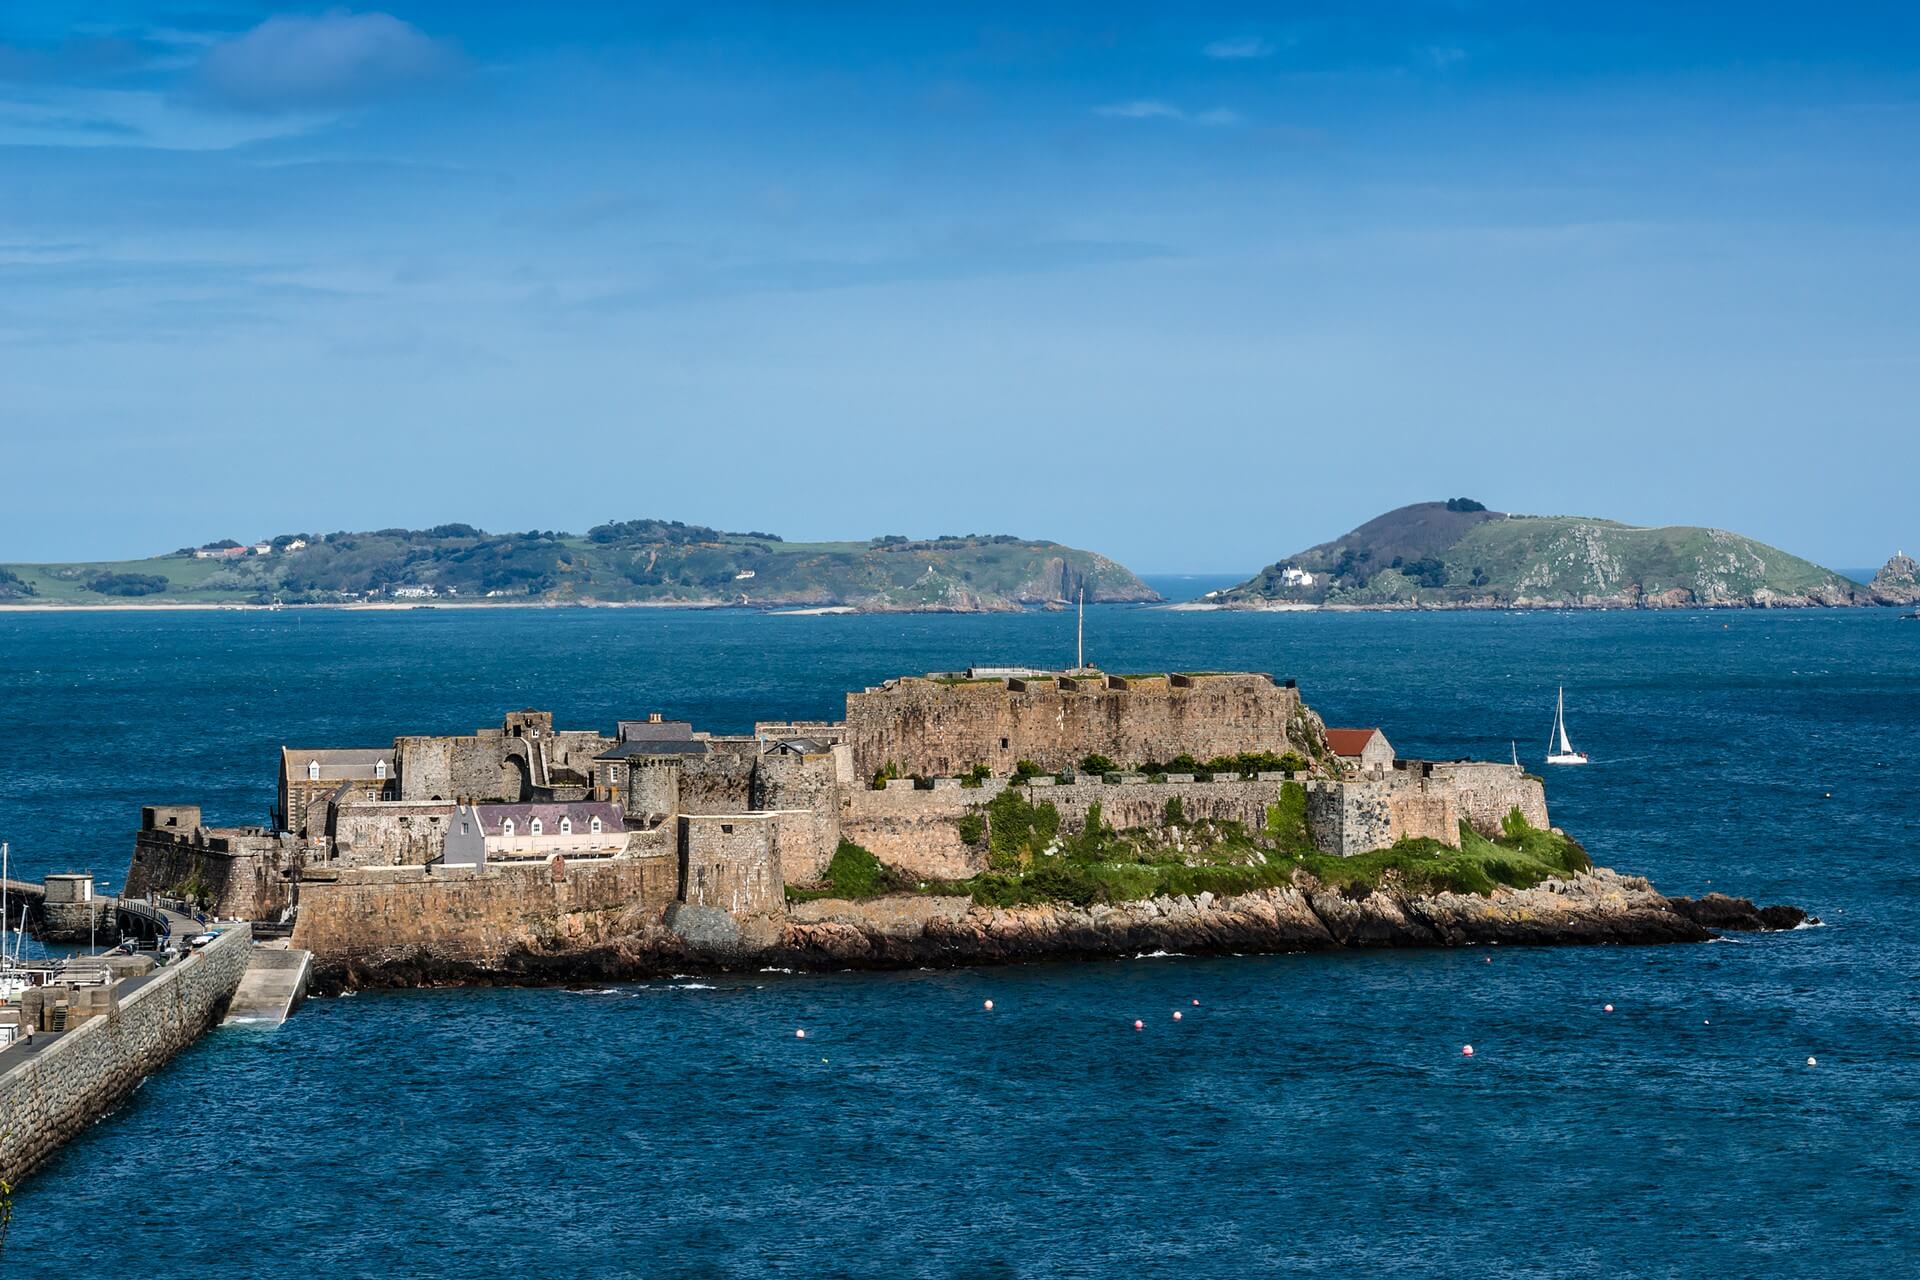 Le château Cornet garde Saint-Pierre-Port depuis 800 ans. Saint Peter Port - capitale de Guernesey - Dépendance de la Couronne britannique dans la Manche au large des côtes normandes. Vue depuis la Manche.